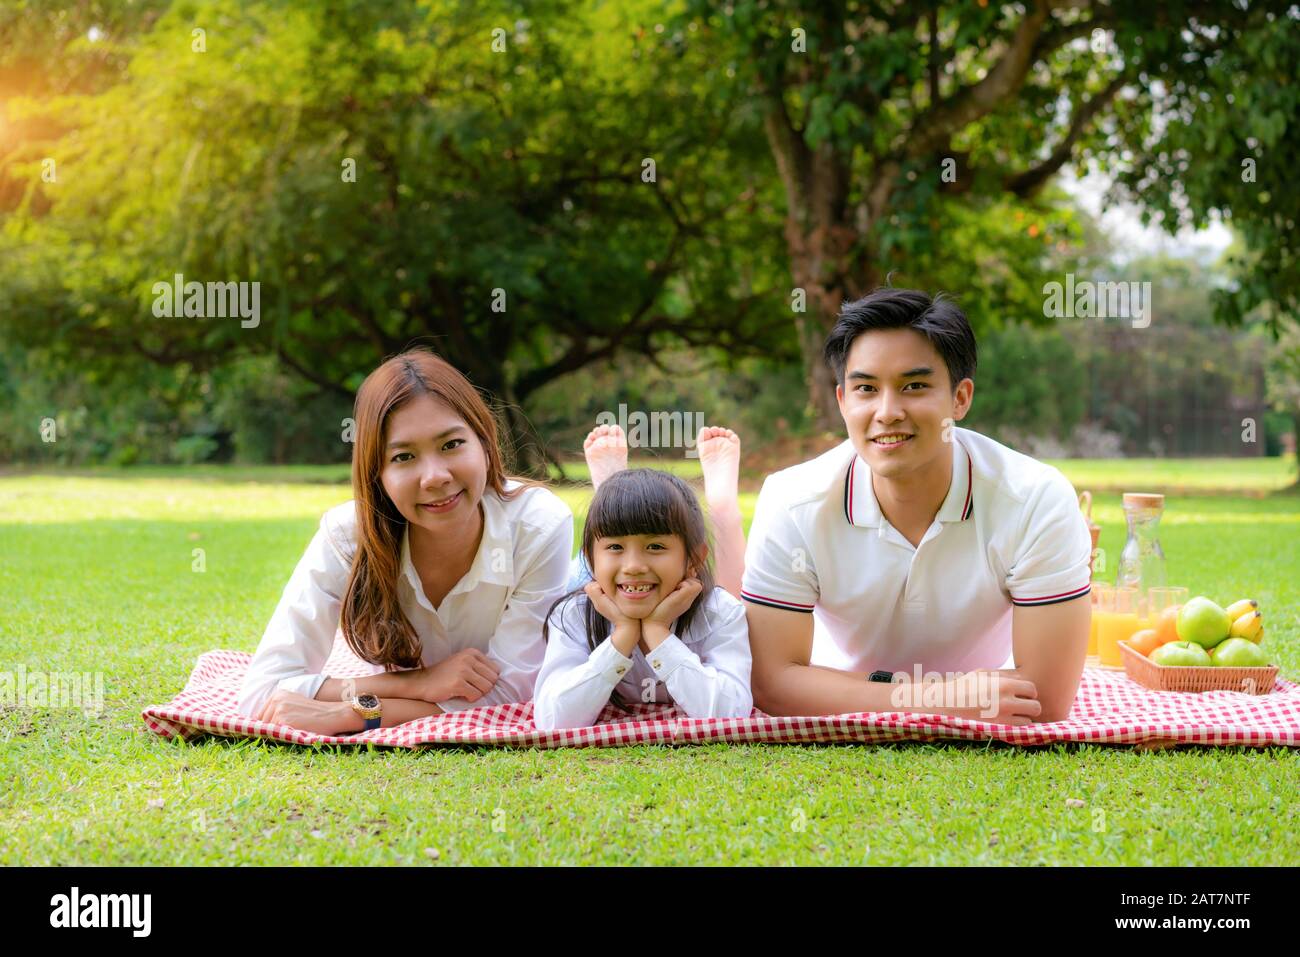 Asiatische Teenager Familie fröhlicher Urlaub Picknick-Moment im Park mit Vater, Mutter und Tochter liegen auf Matte und lächeln zu fröhlichen Urlaubszeiten zusammen Stockfoto